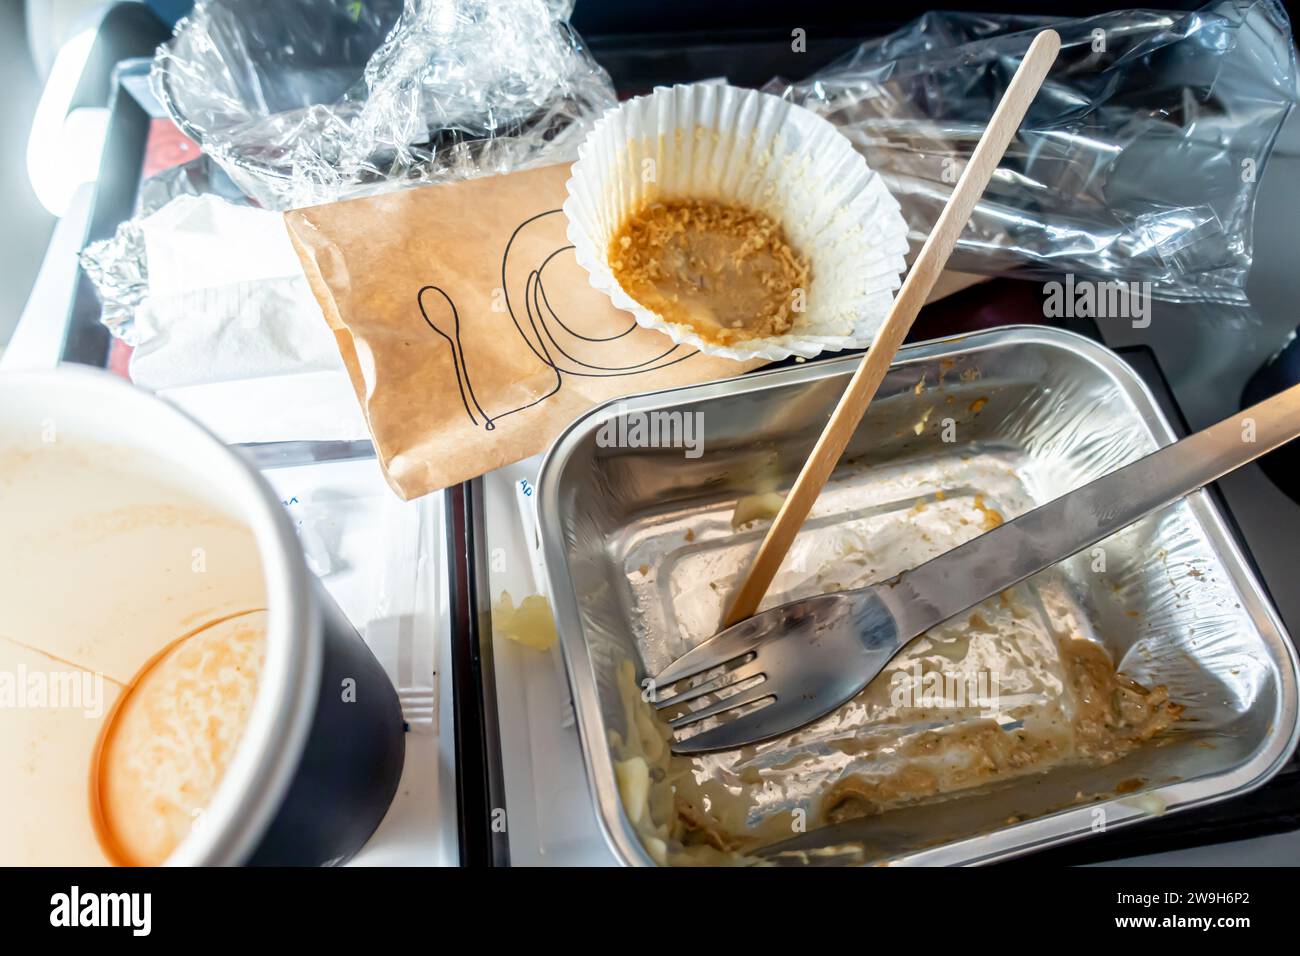 Didascalia 76/150 vassoio degli alimenti per aerei Grumo finito, contenitori sporchi dopo il pasto, serviti nel sedile dell'aereo durante il volo Foto Stock